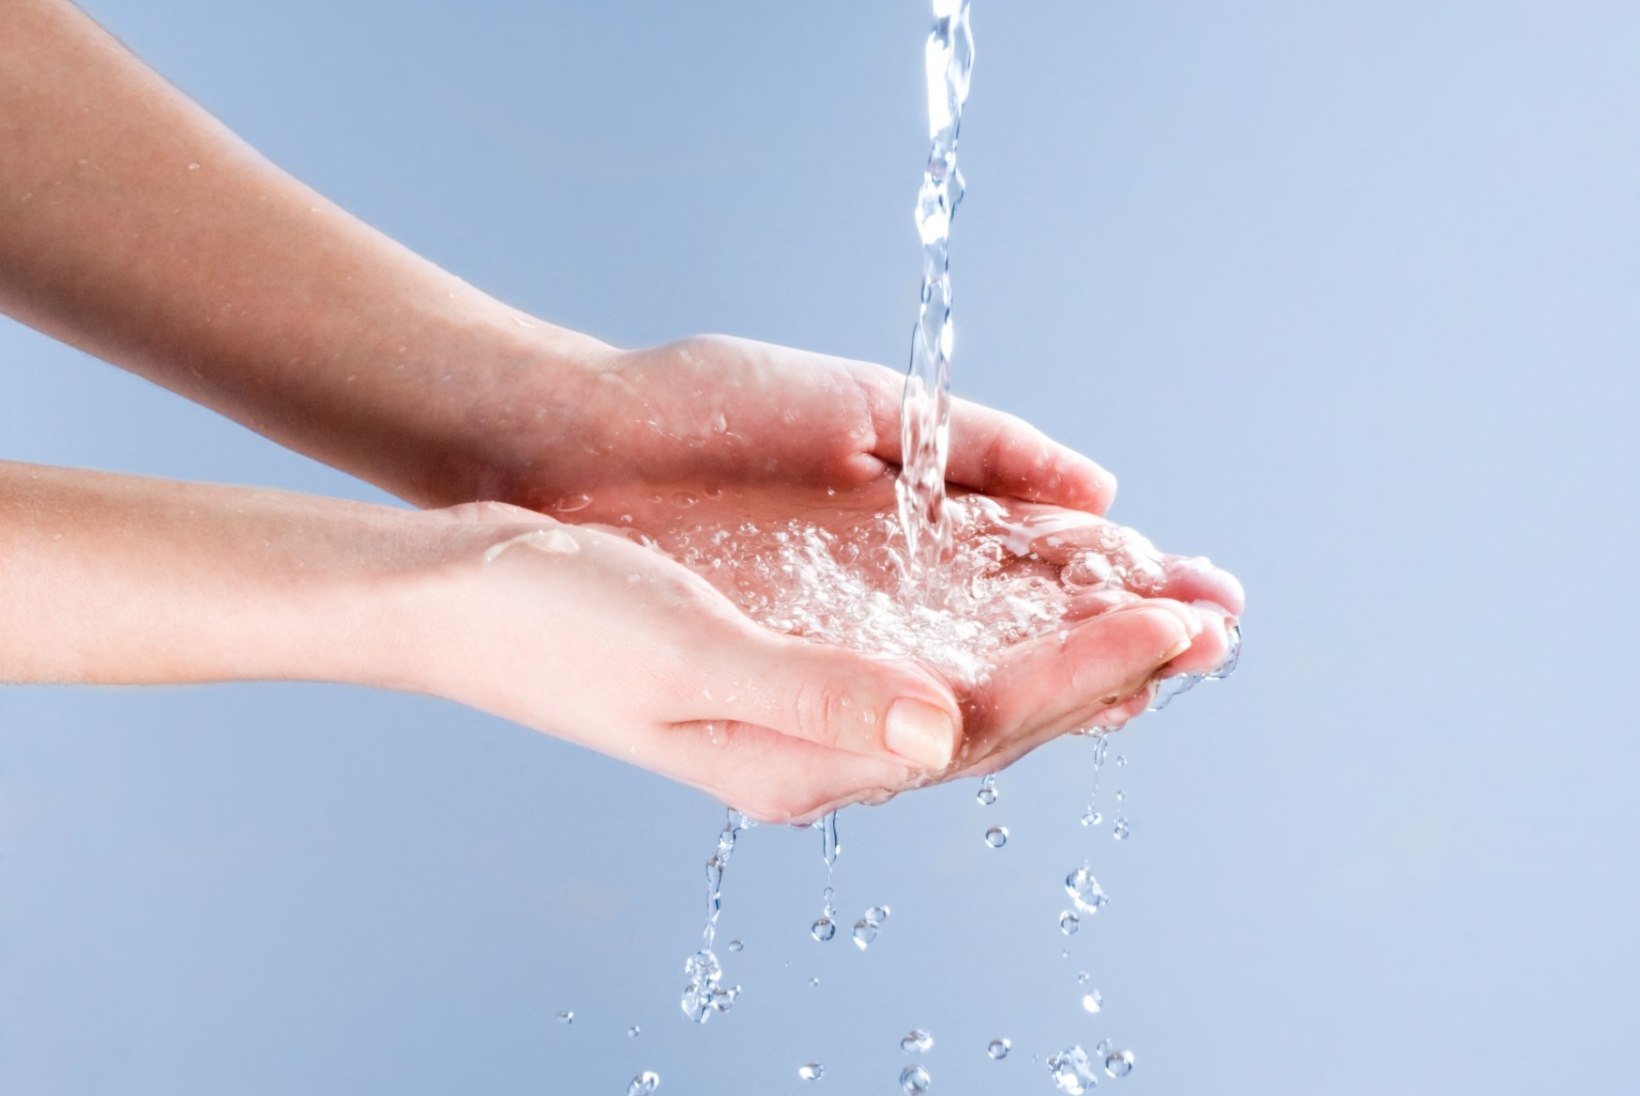 Gripp möllab: Kas sina oskad käsi õigesti pesta?